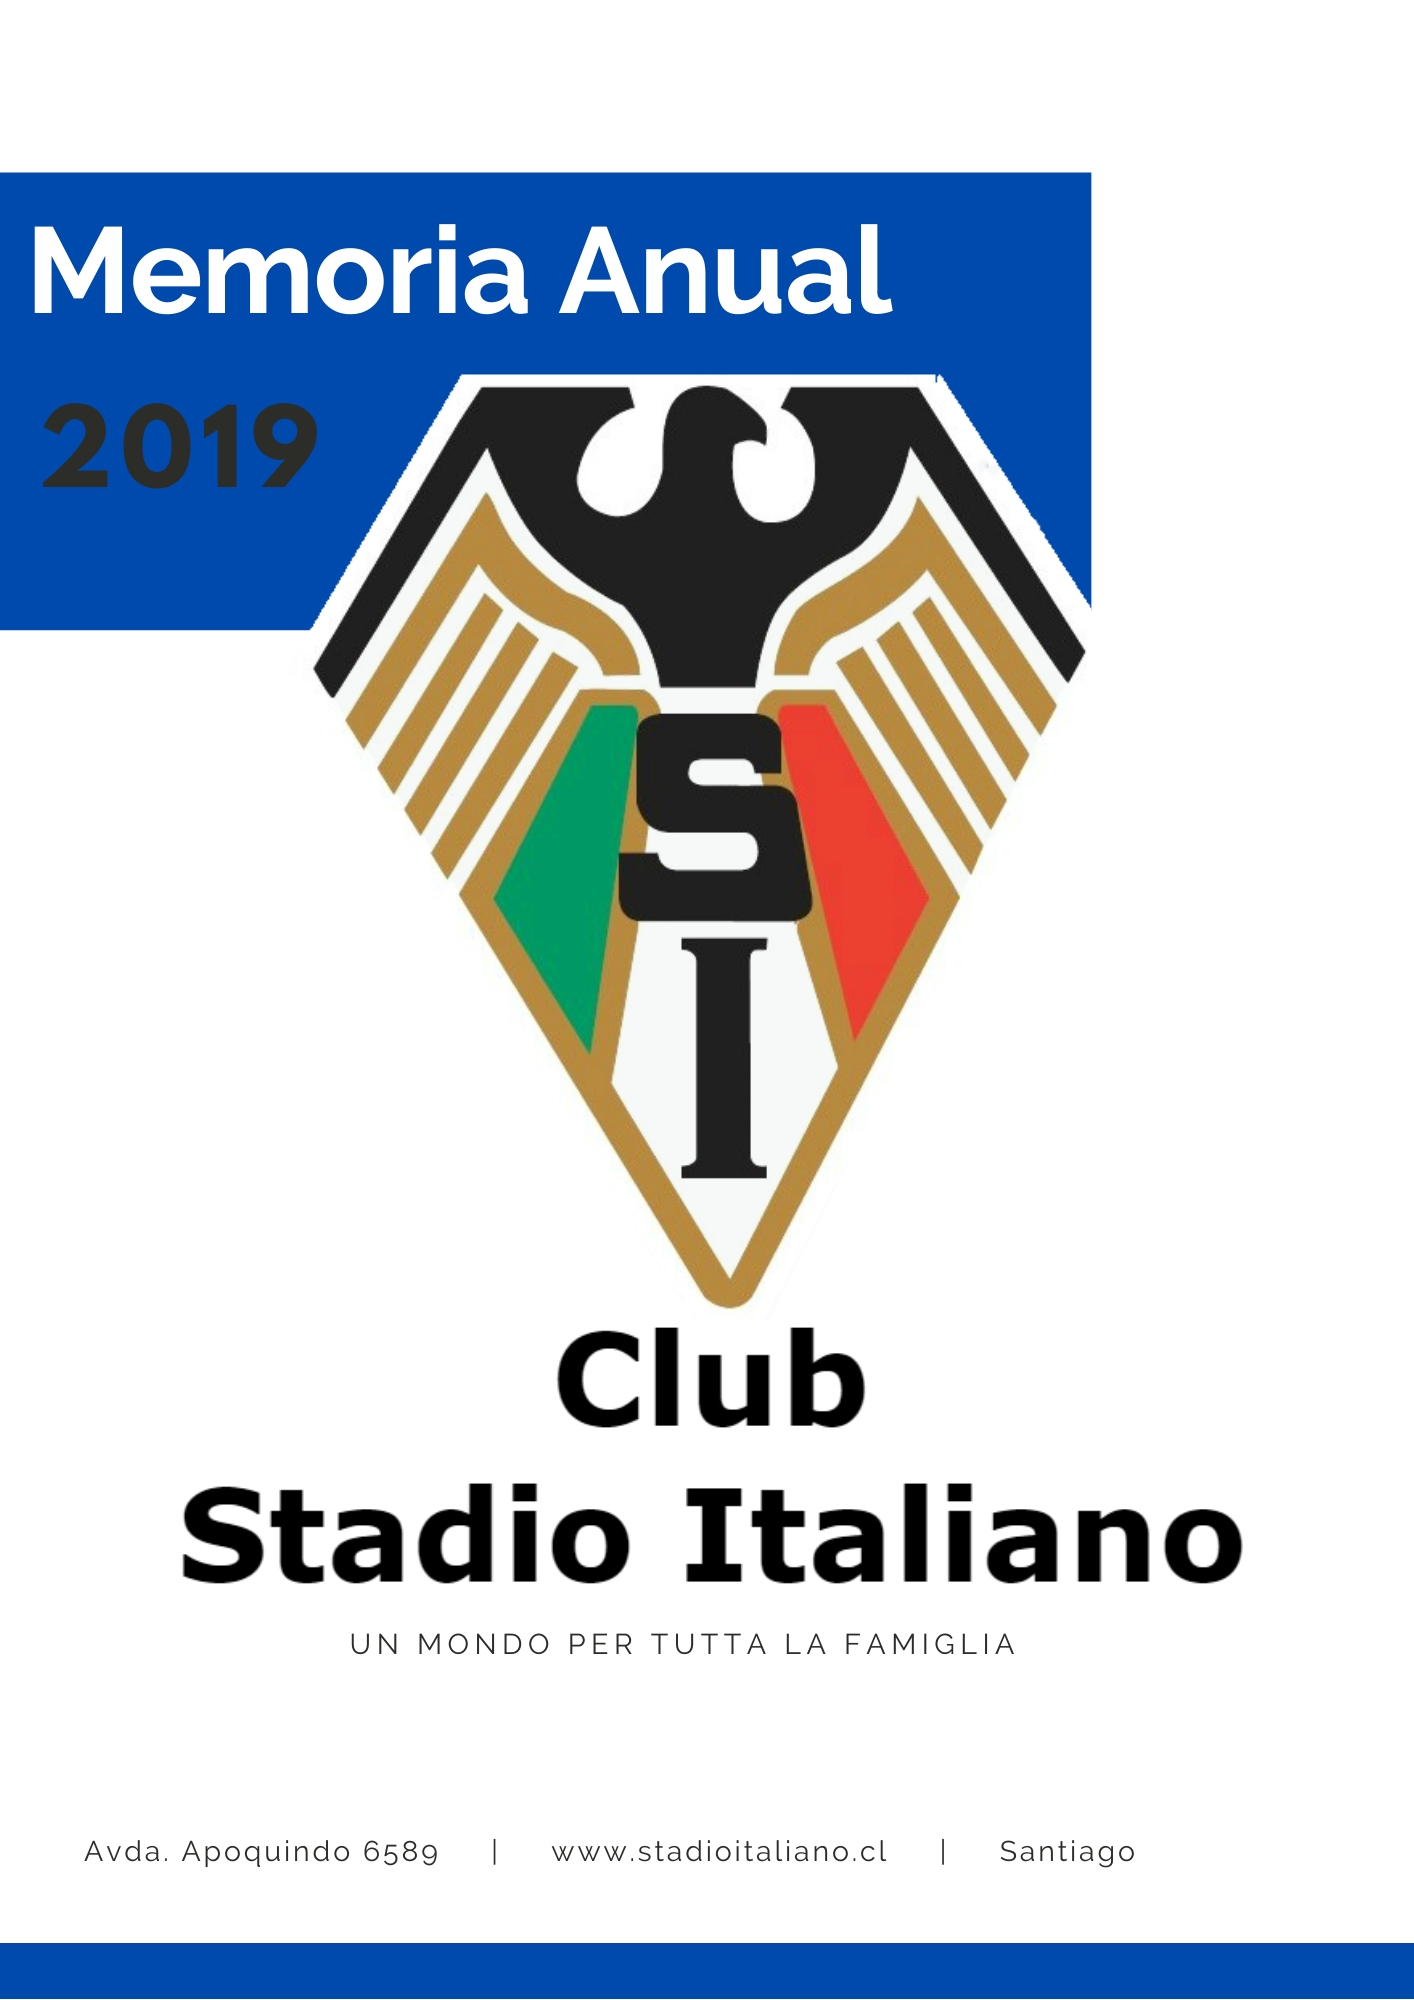 Memoria 2019 Stadio Italiano (1)